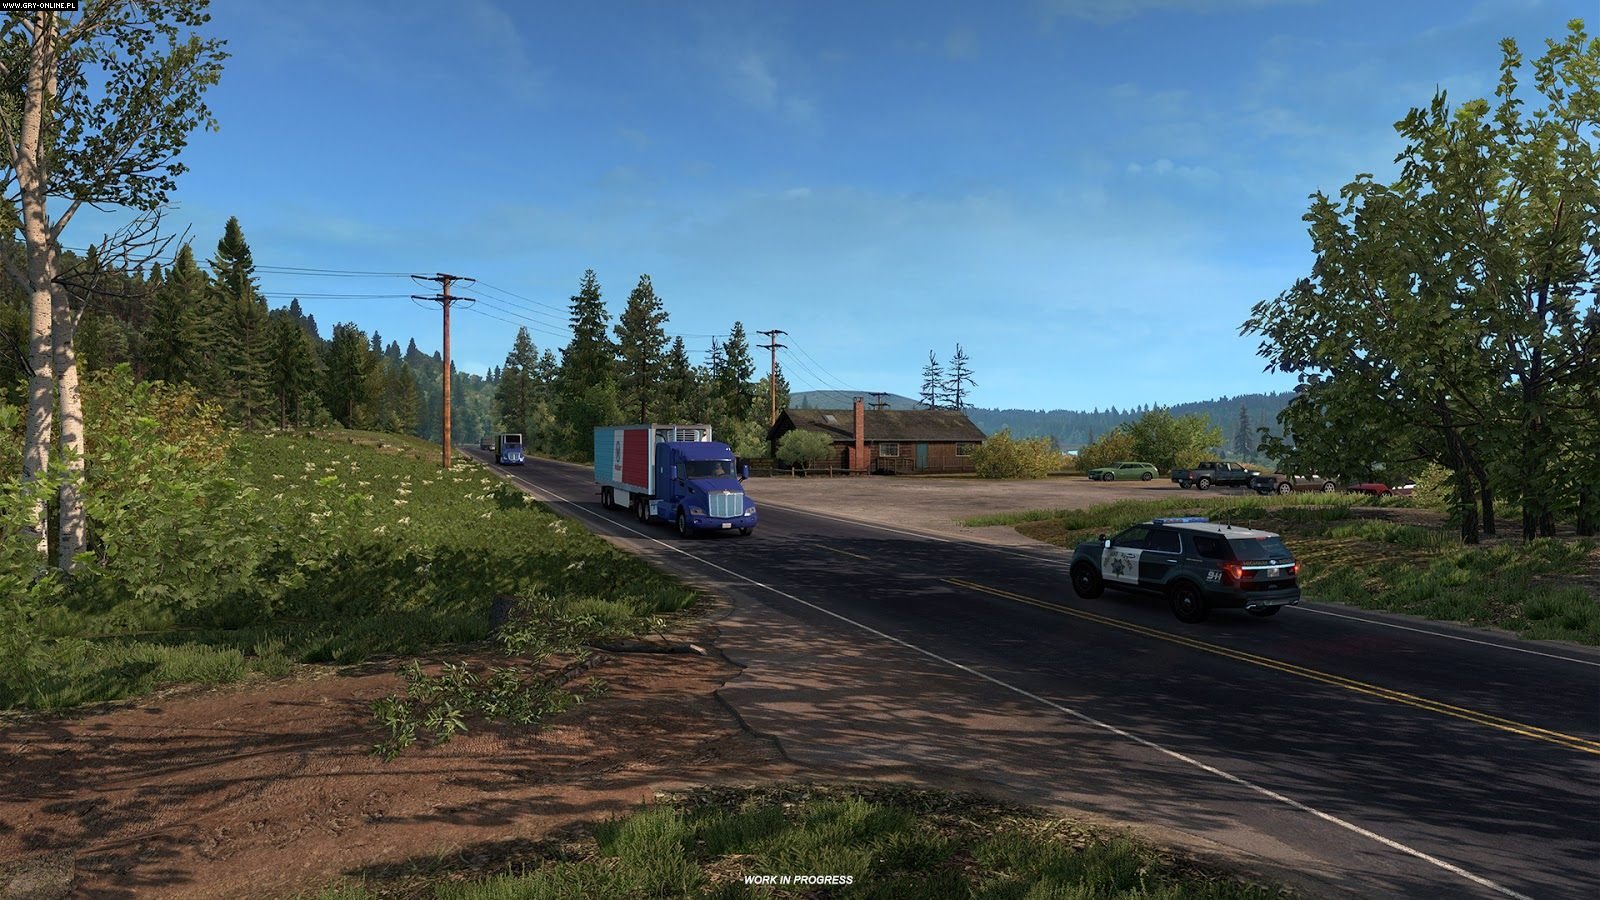 arizona dlc american truck simulator download online